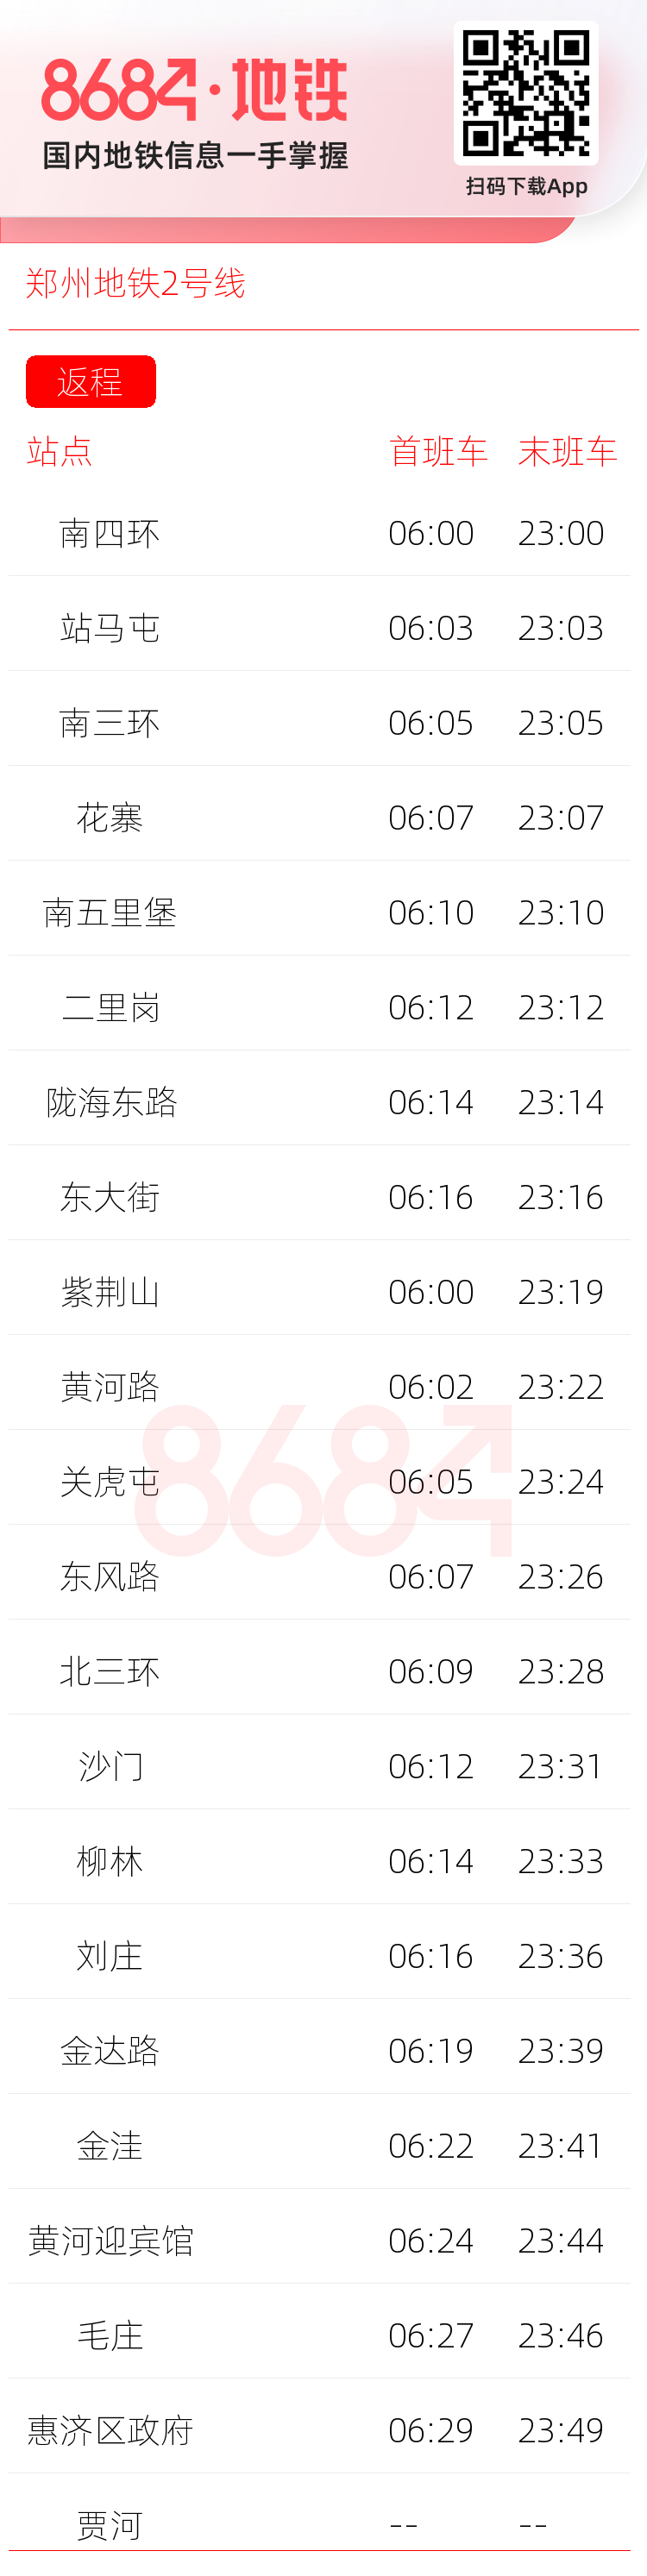 郑州地铁2号线运营时间表